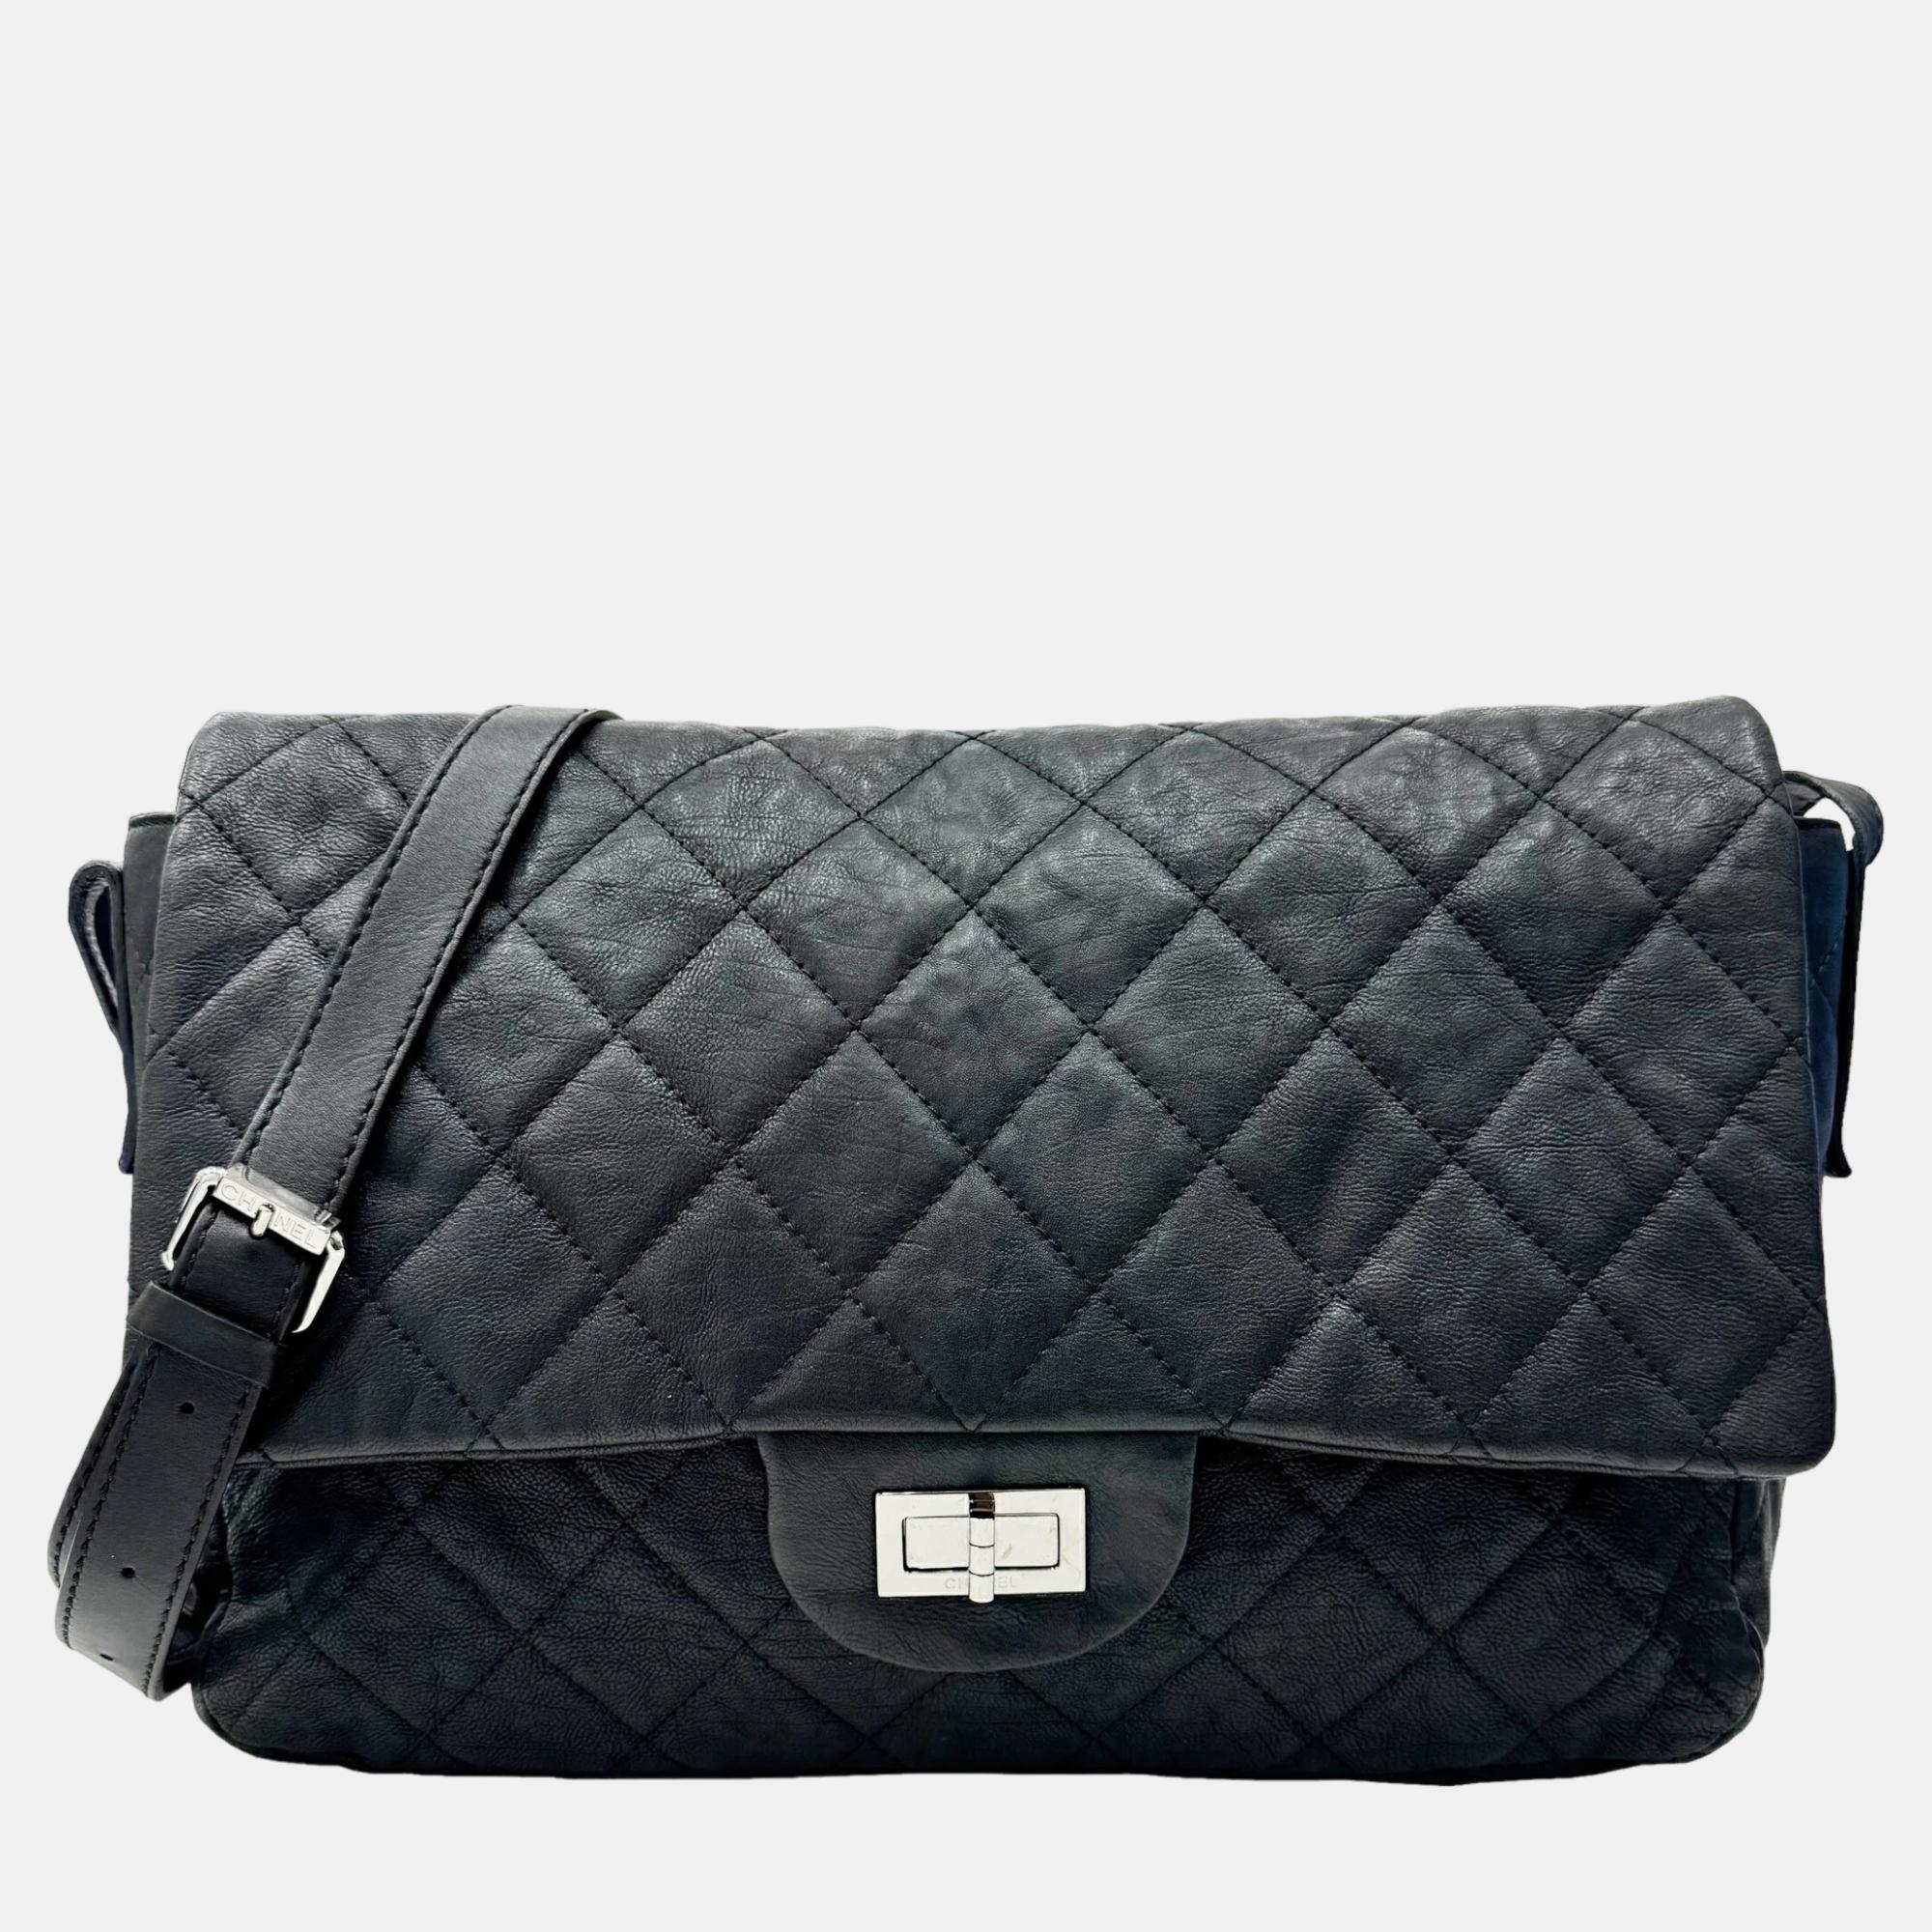 Chanel black leather reissue shoulder bag